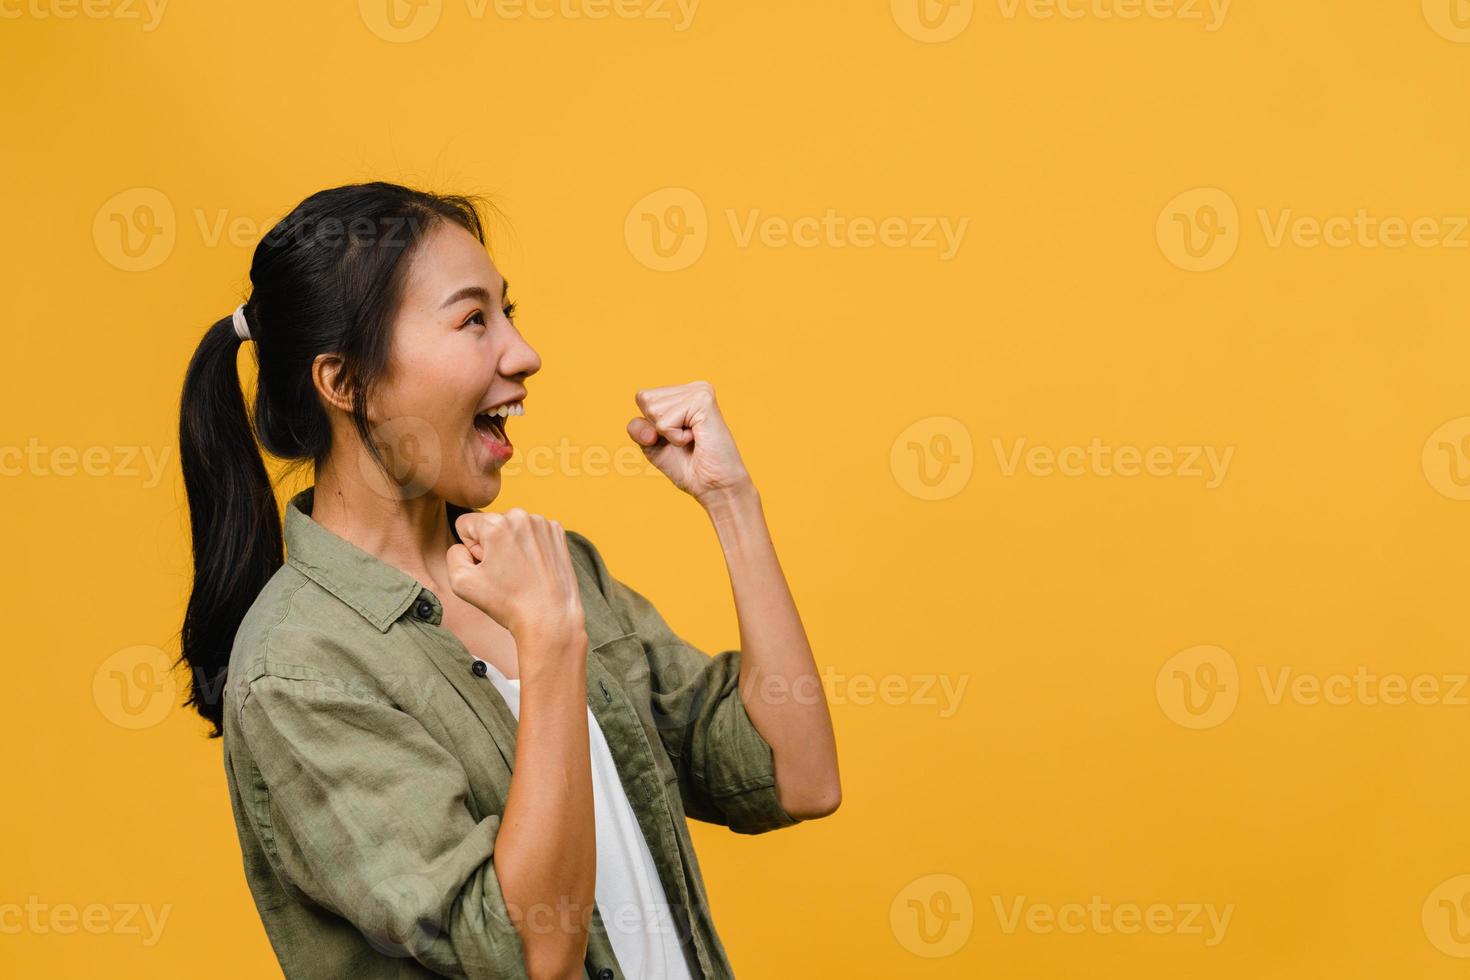 jovencita de asia con expresión positiva, alegre y emocionante, vestida con ropa casual sobre fondo amarillo con espacio vacío. feliz adorable mujer alegre se regocija con el éxito. concepto de expresión facial. foto